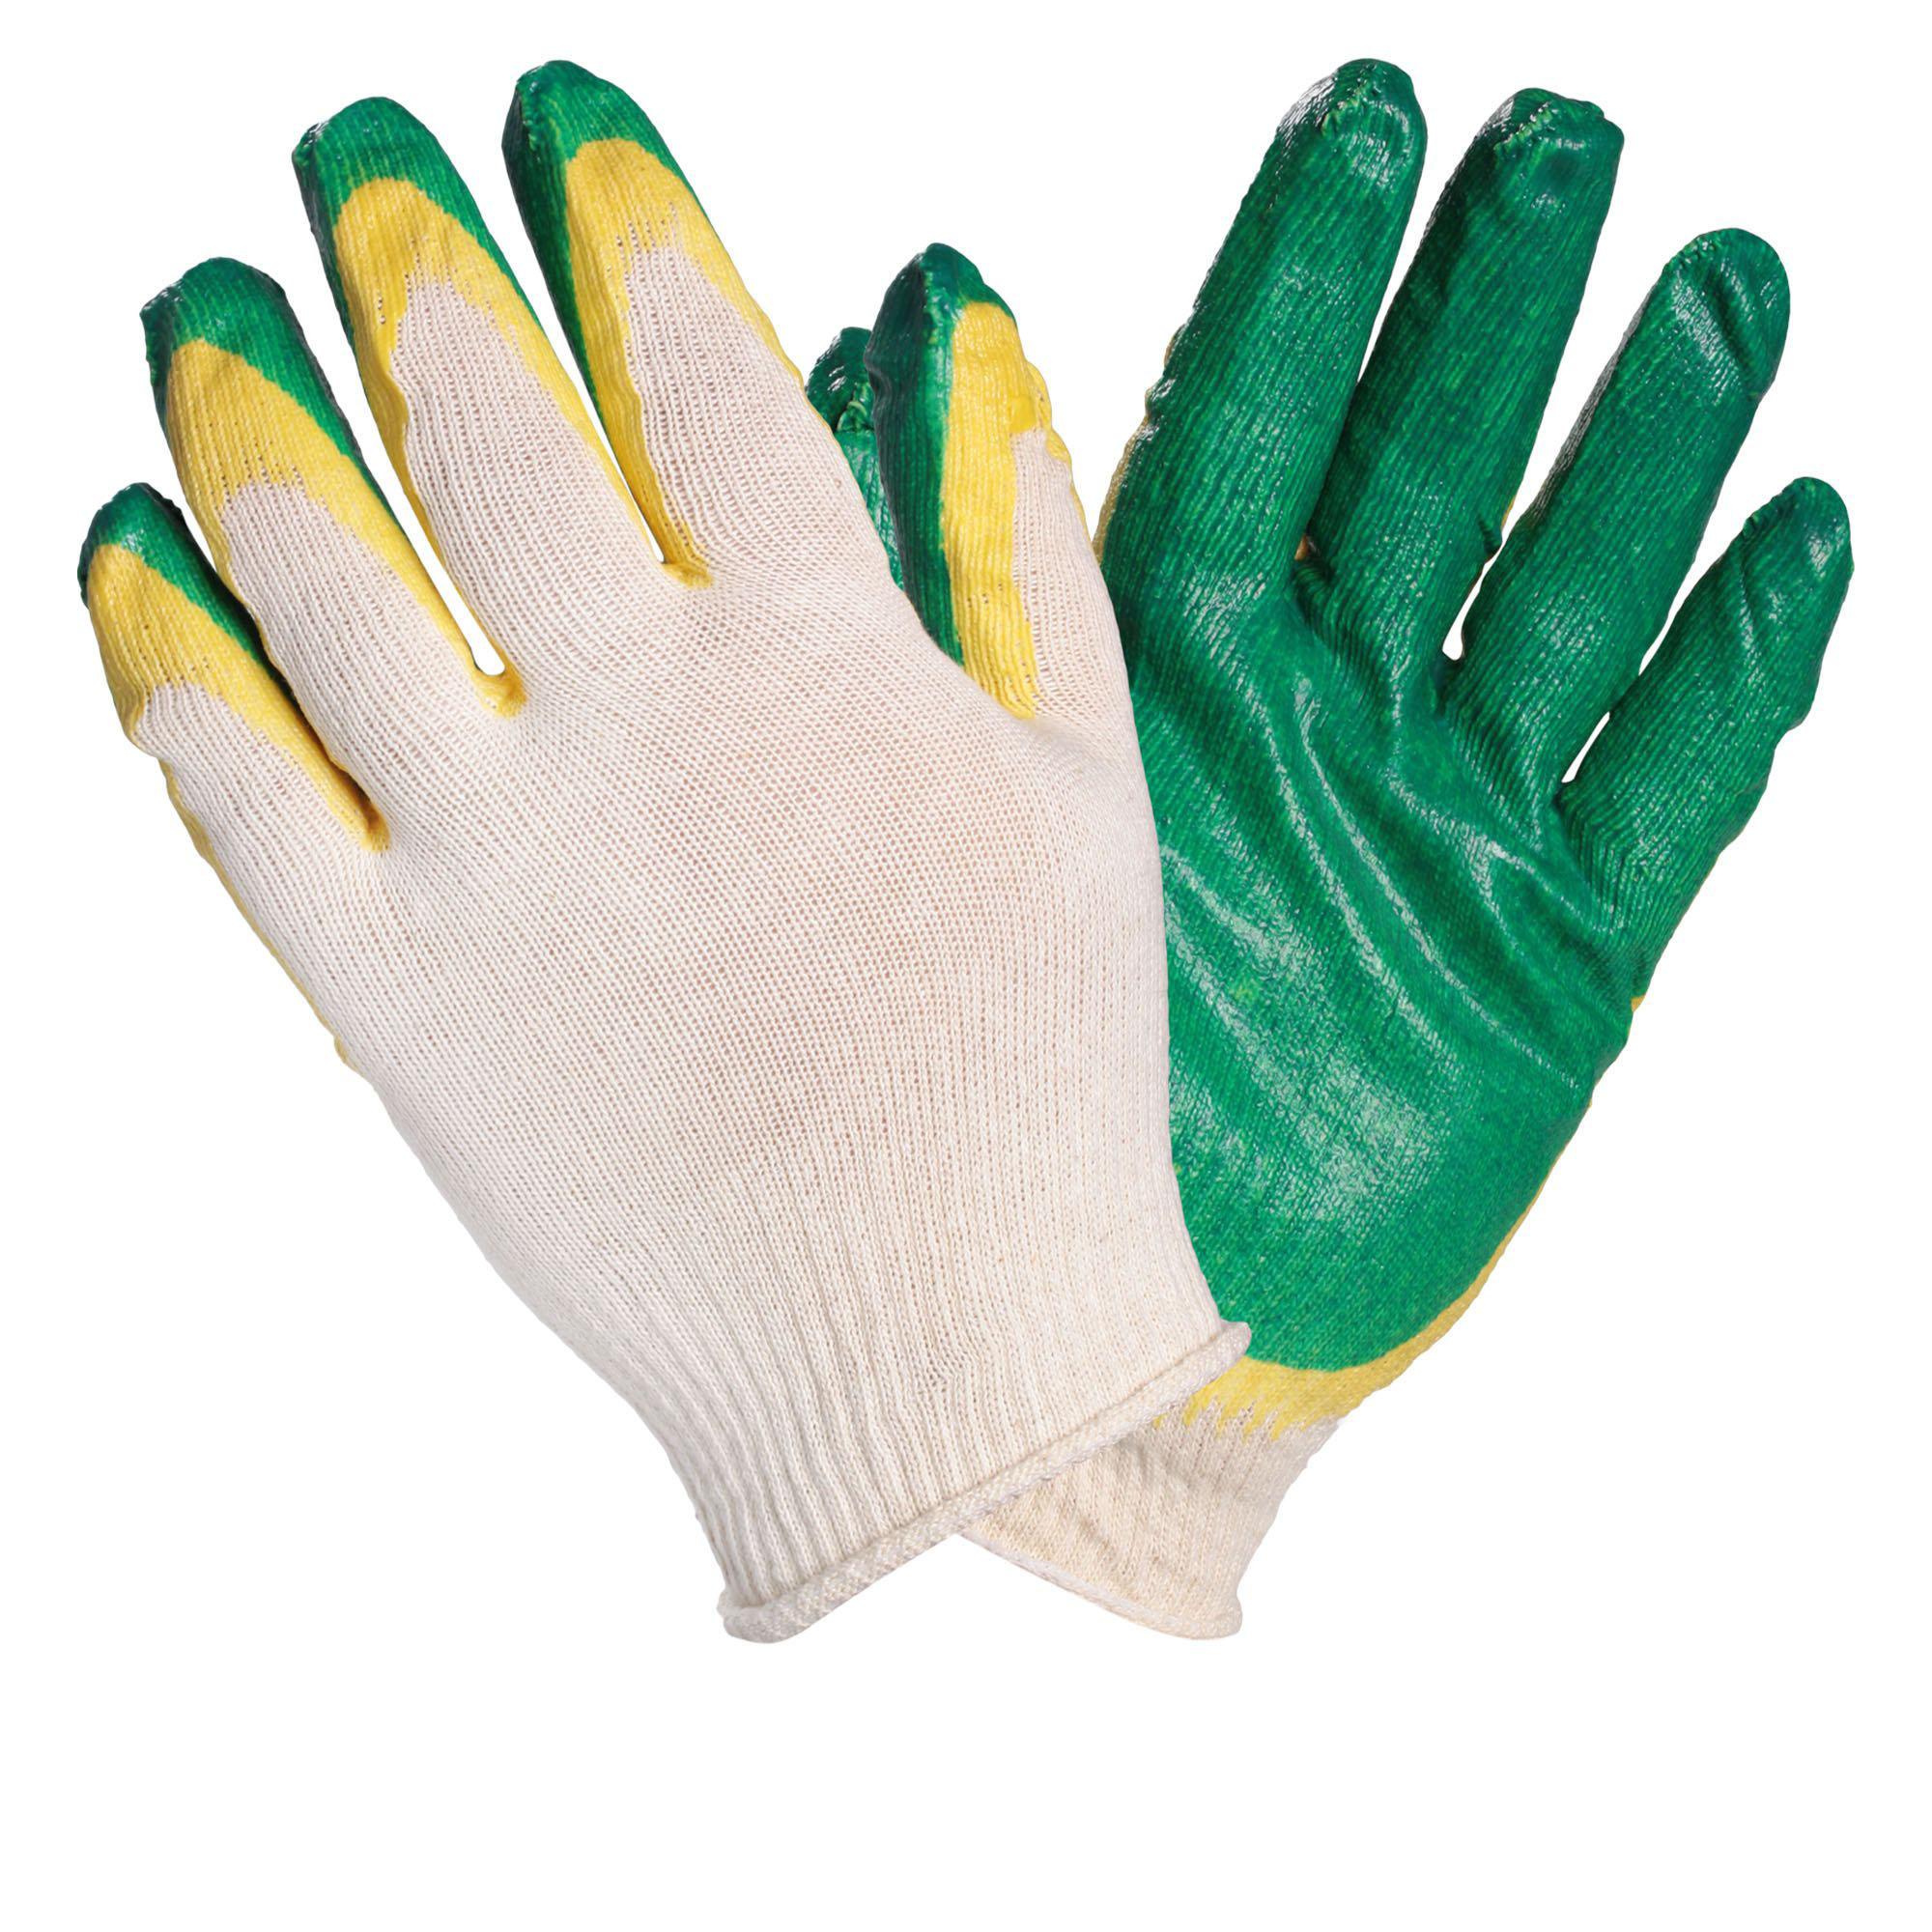 AIRLINE AWGC08 Перчатки ХБ с двойным латексным покрытием ладони, зеленые (1 пара) перчатки текстильные с пвх пропиткой зеленые greengo